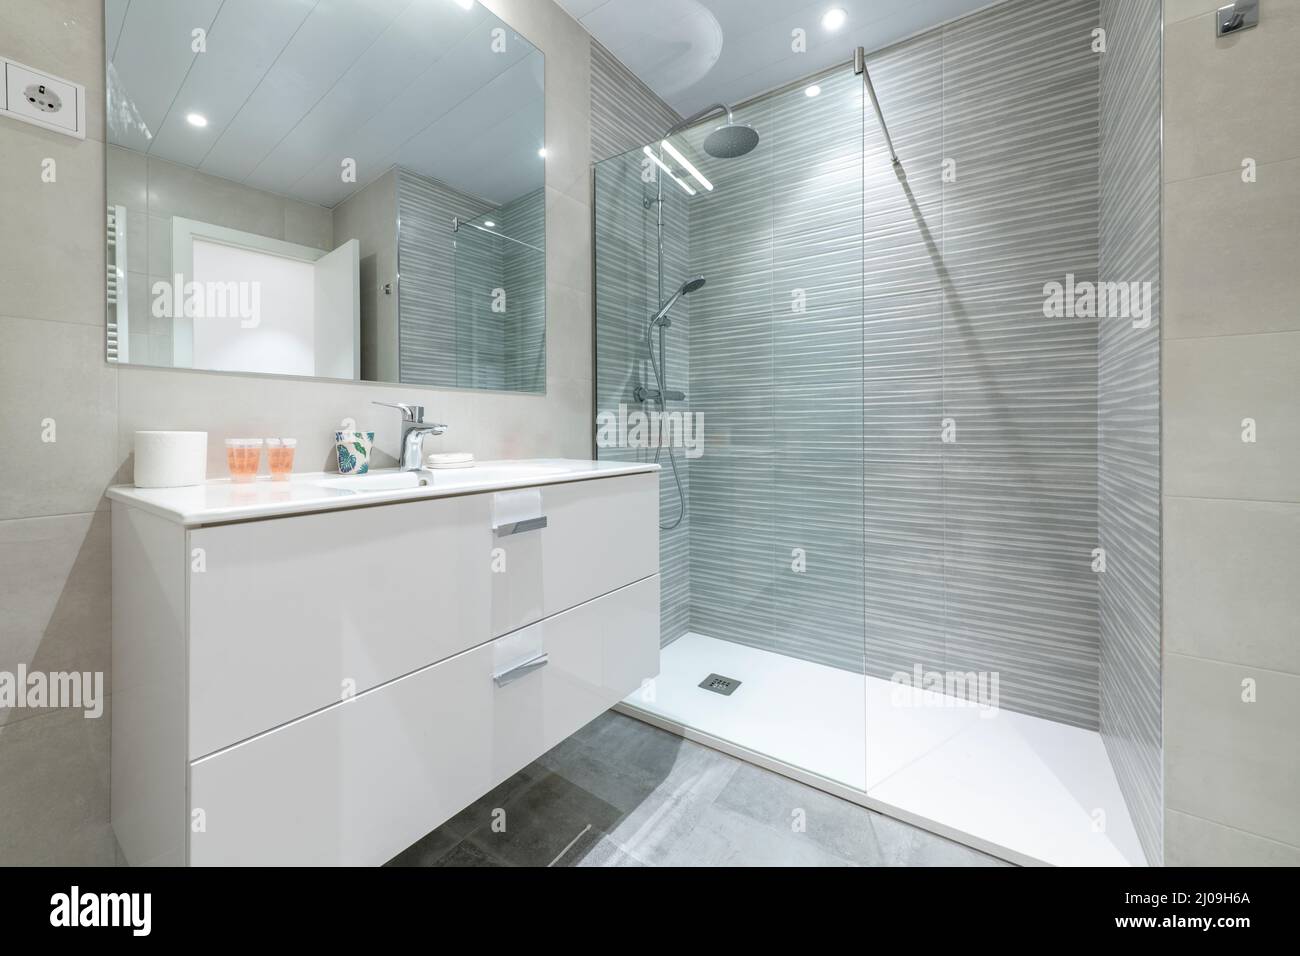 Salle de bains avec cabine de douche avec cloison en verre, lavabo mural en porcelaine blanche sur meuble en bois, miroir rectangulaire et carrelage en grès céramique Banque D'Images